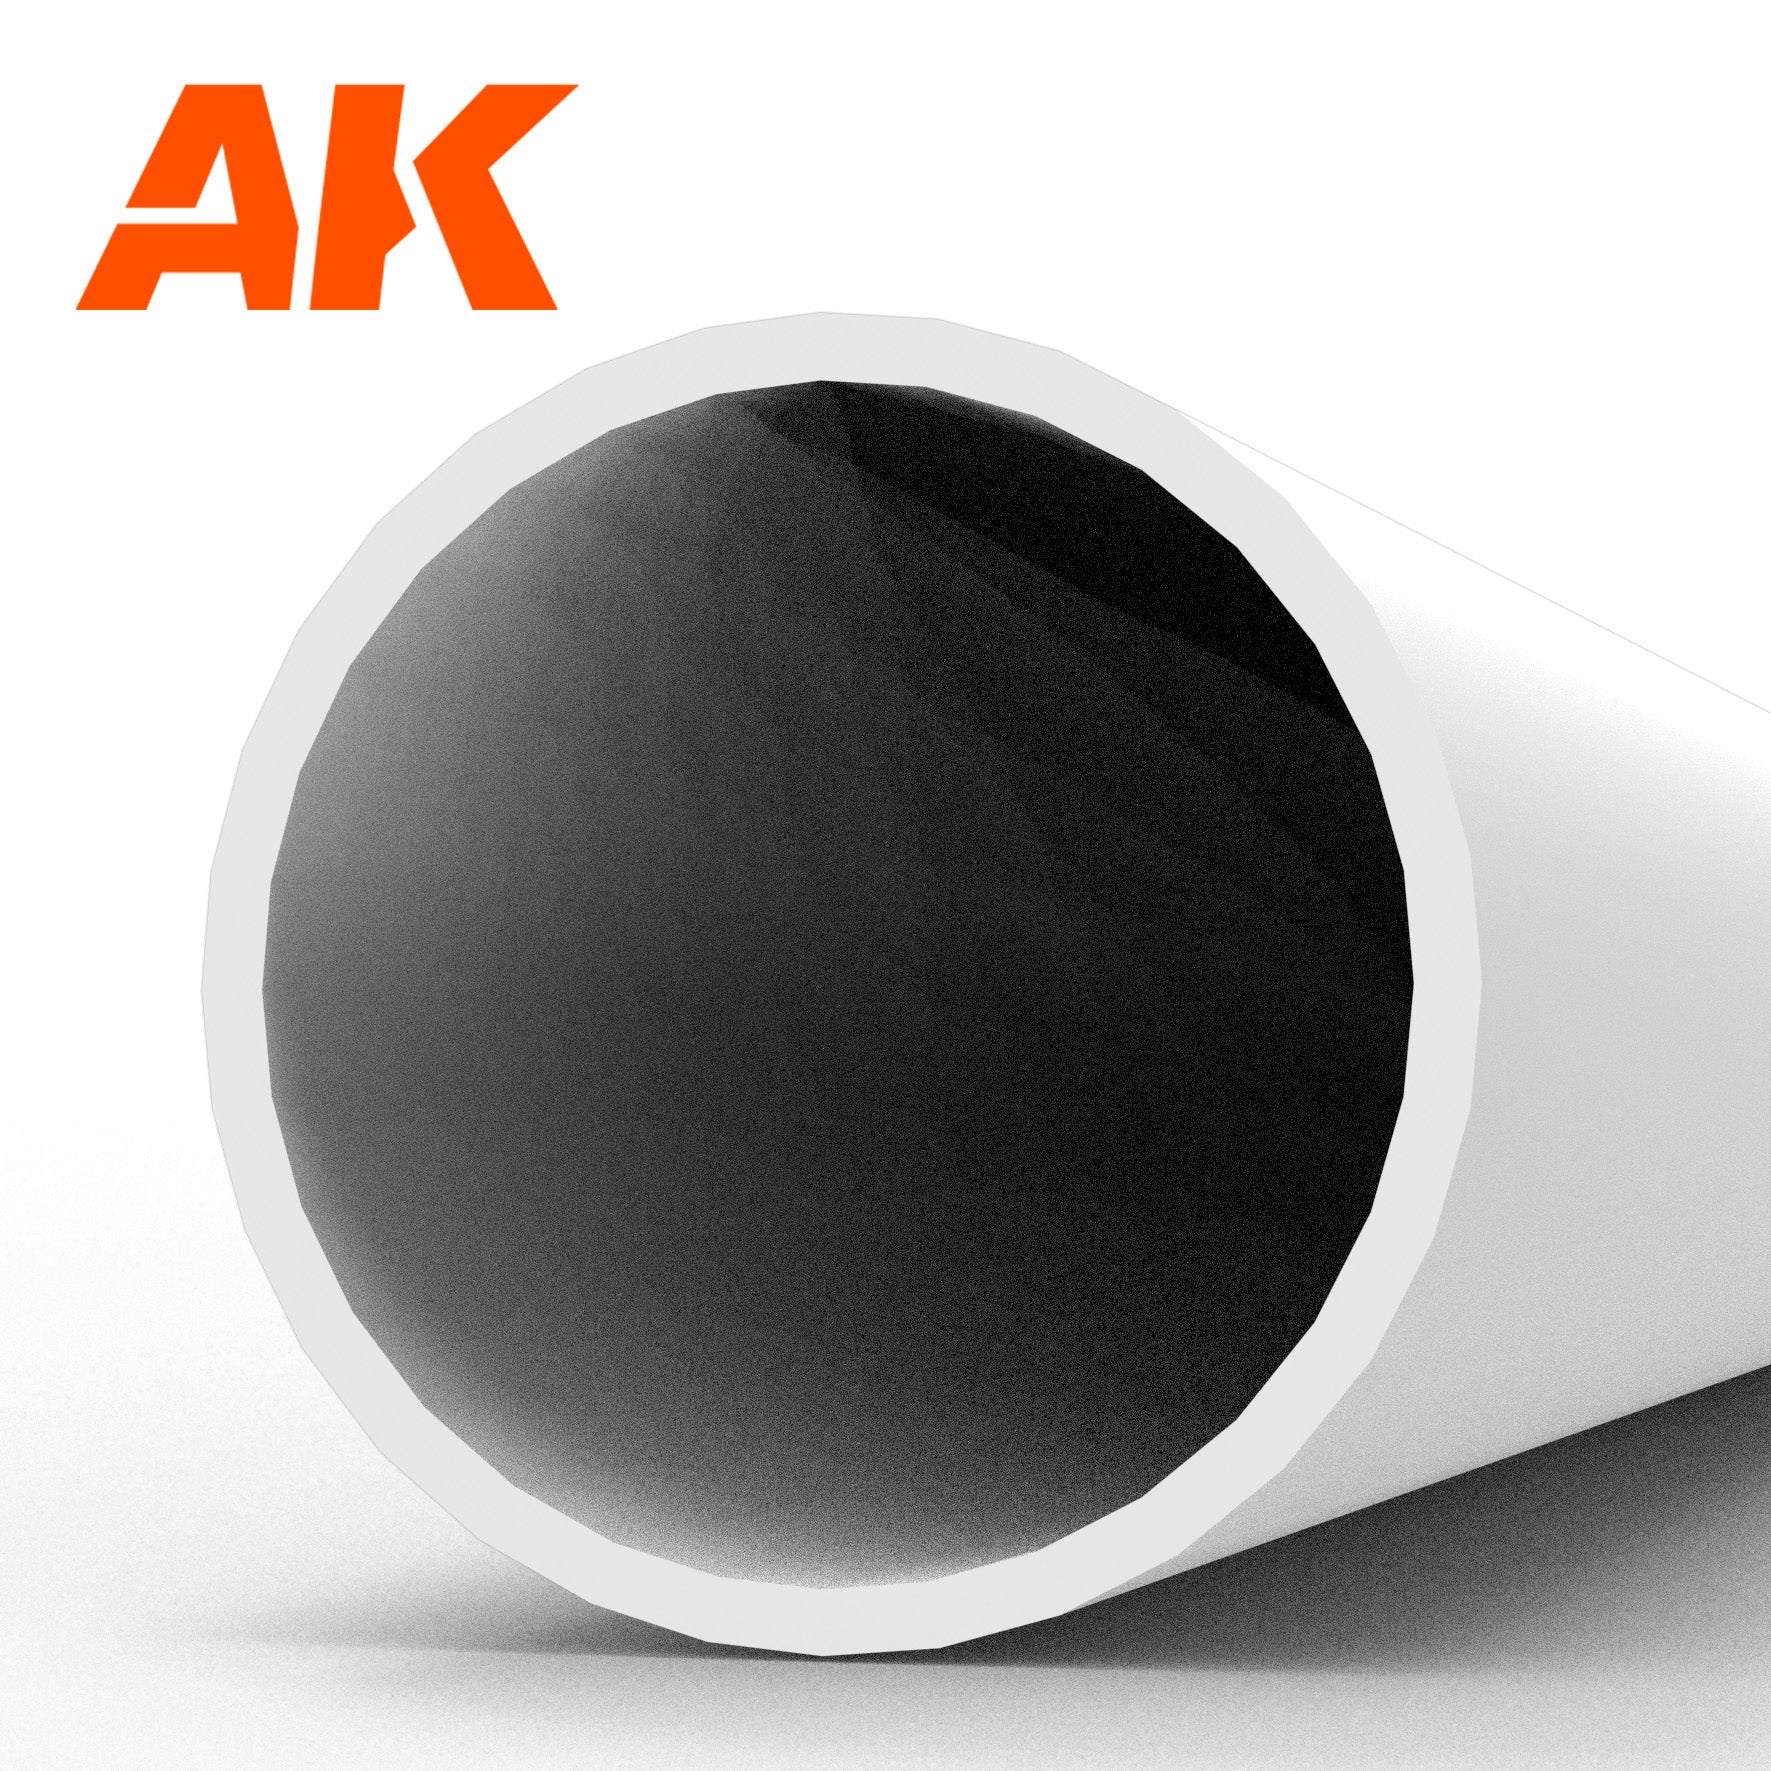 AK6546 - Hollow Tube - Styrene Strip - 6.00D x 350mm (W.T. 0,7MM) (3 units)